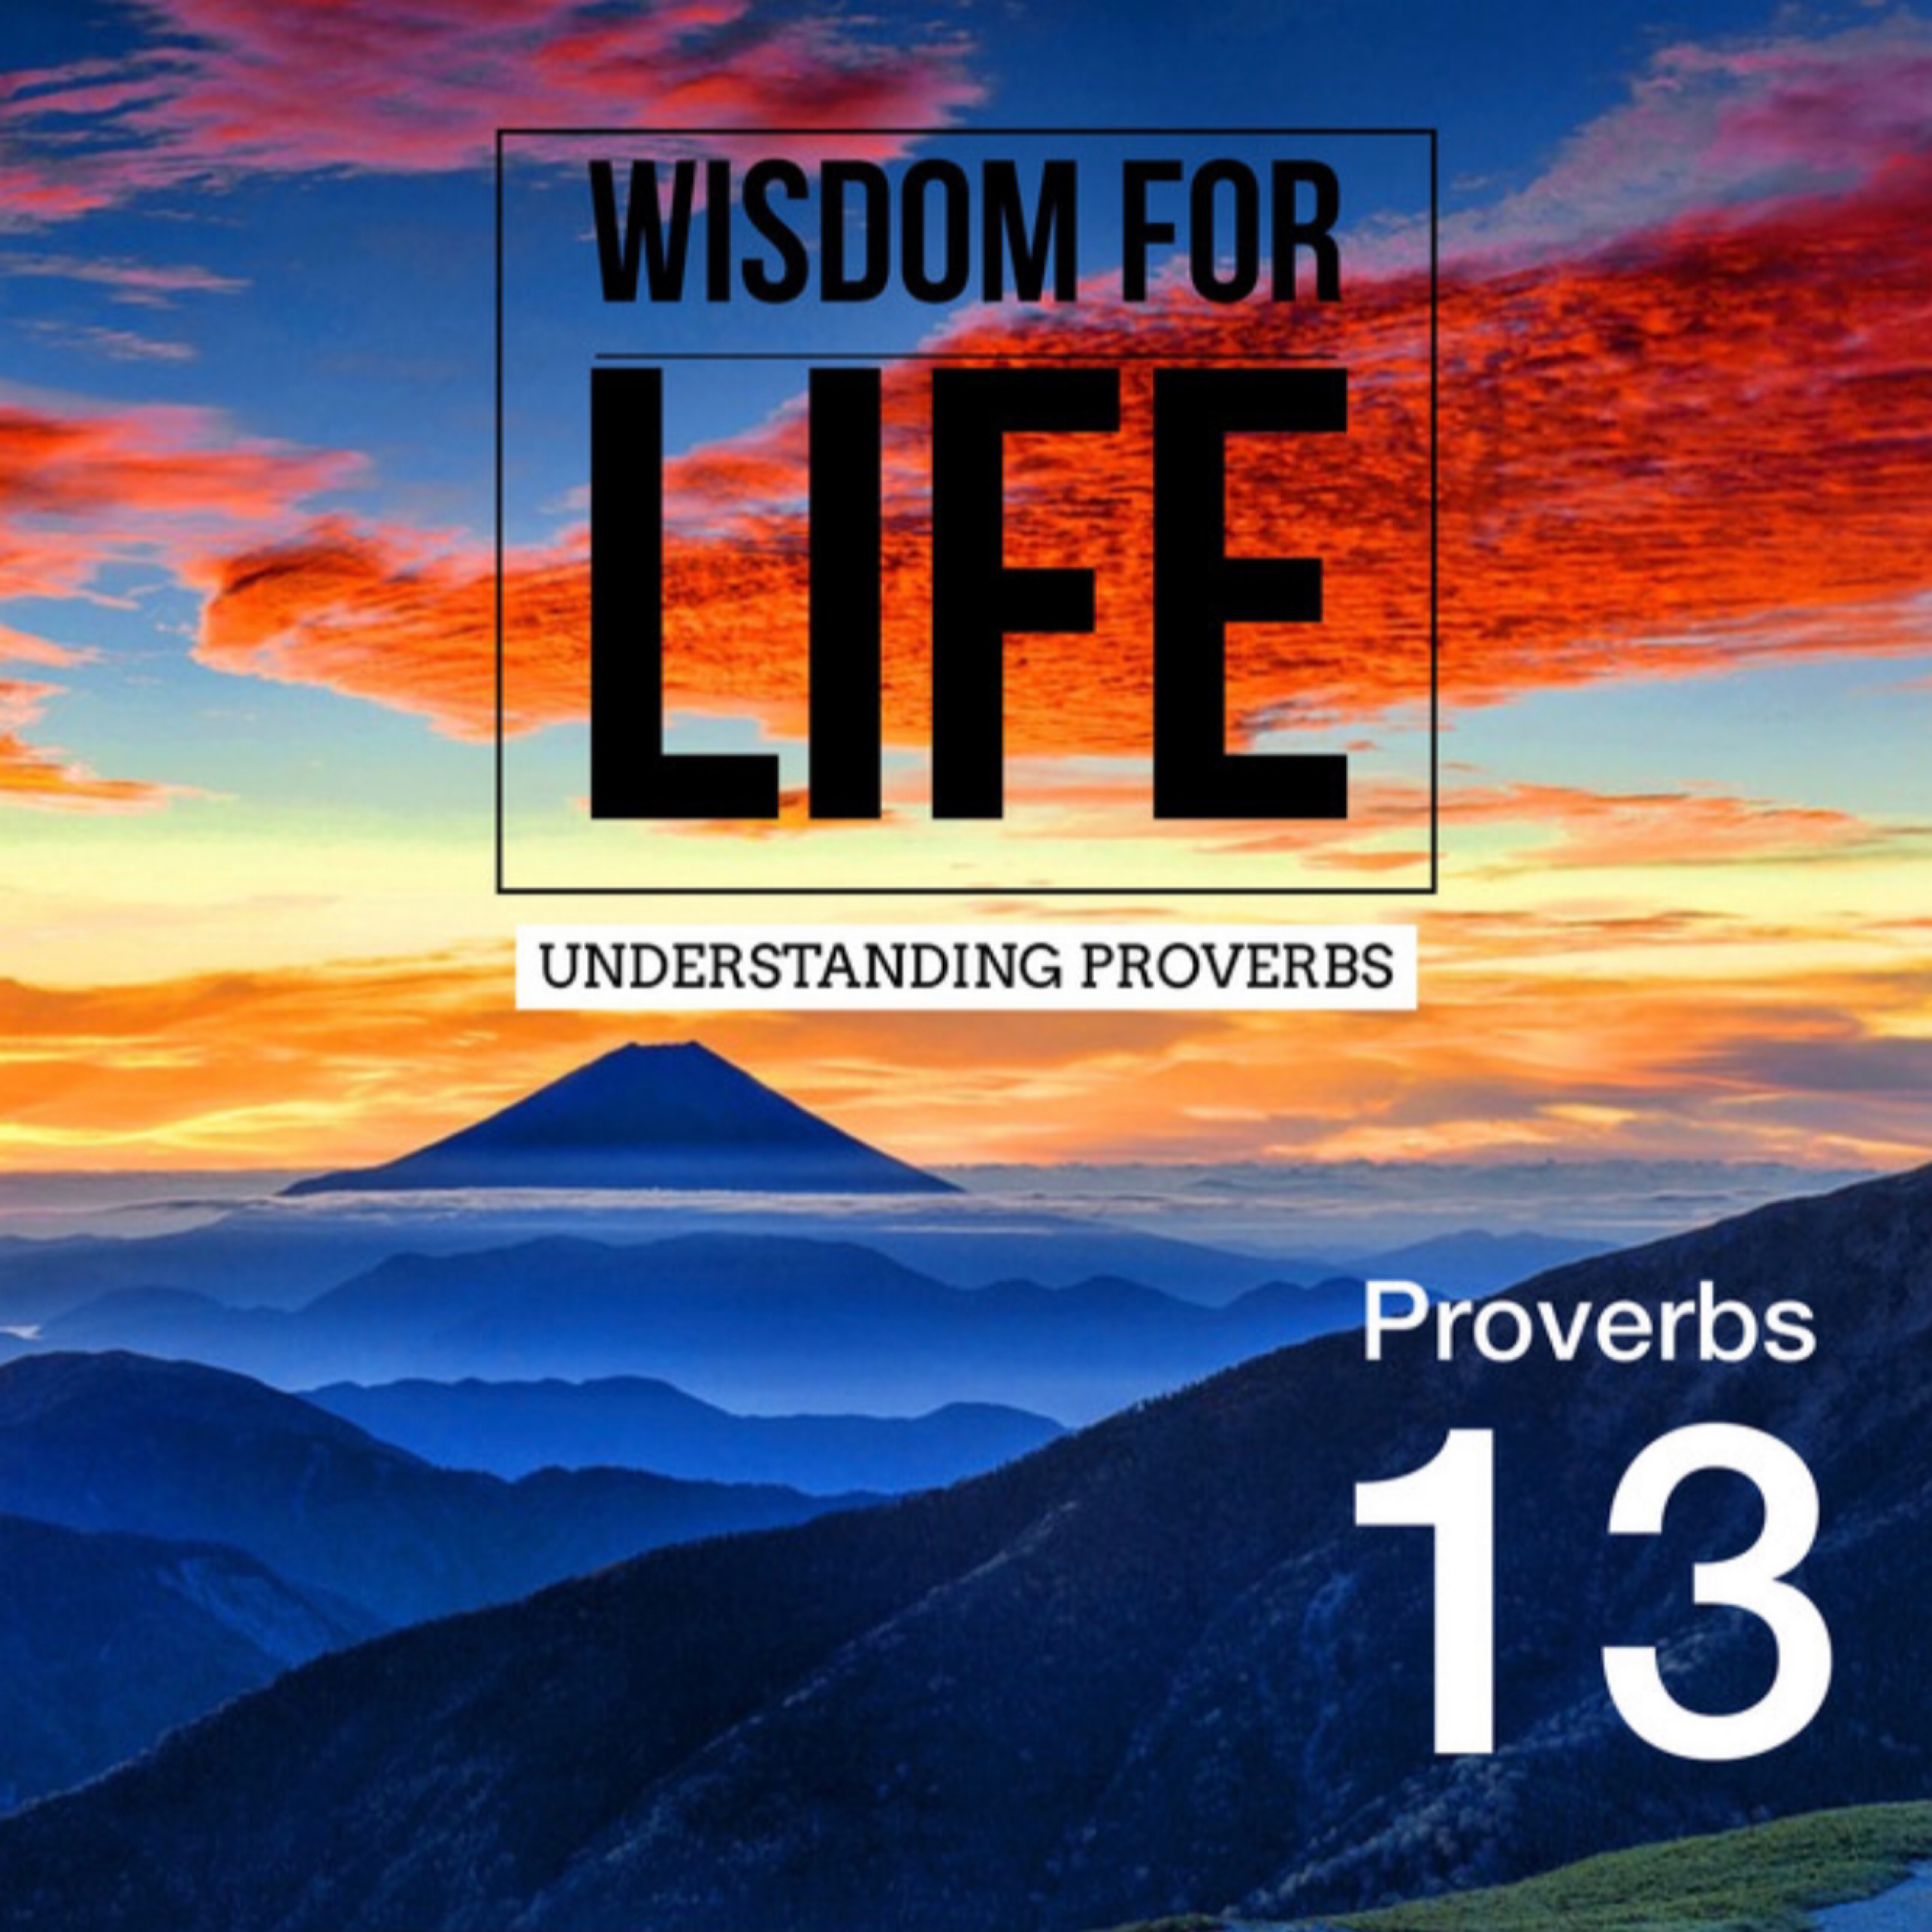 UNDERSTANDING PROVERBS 13